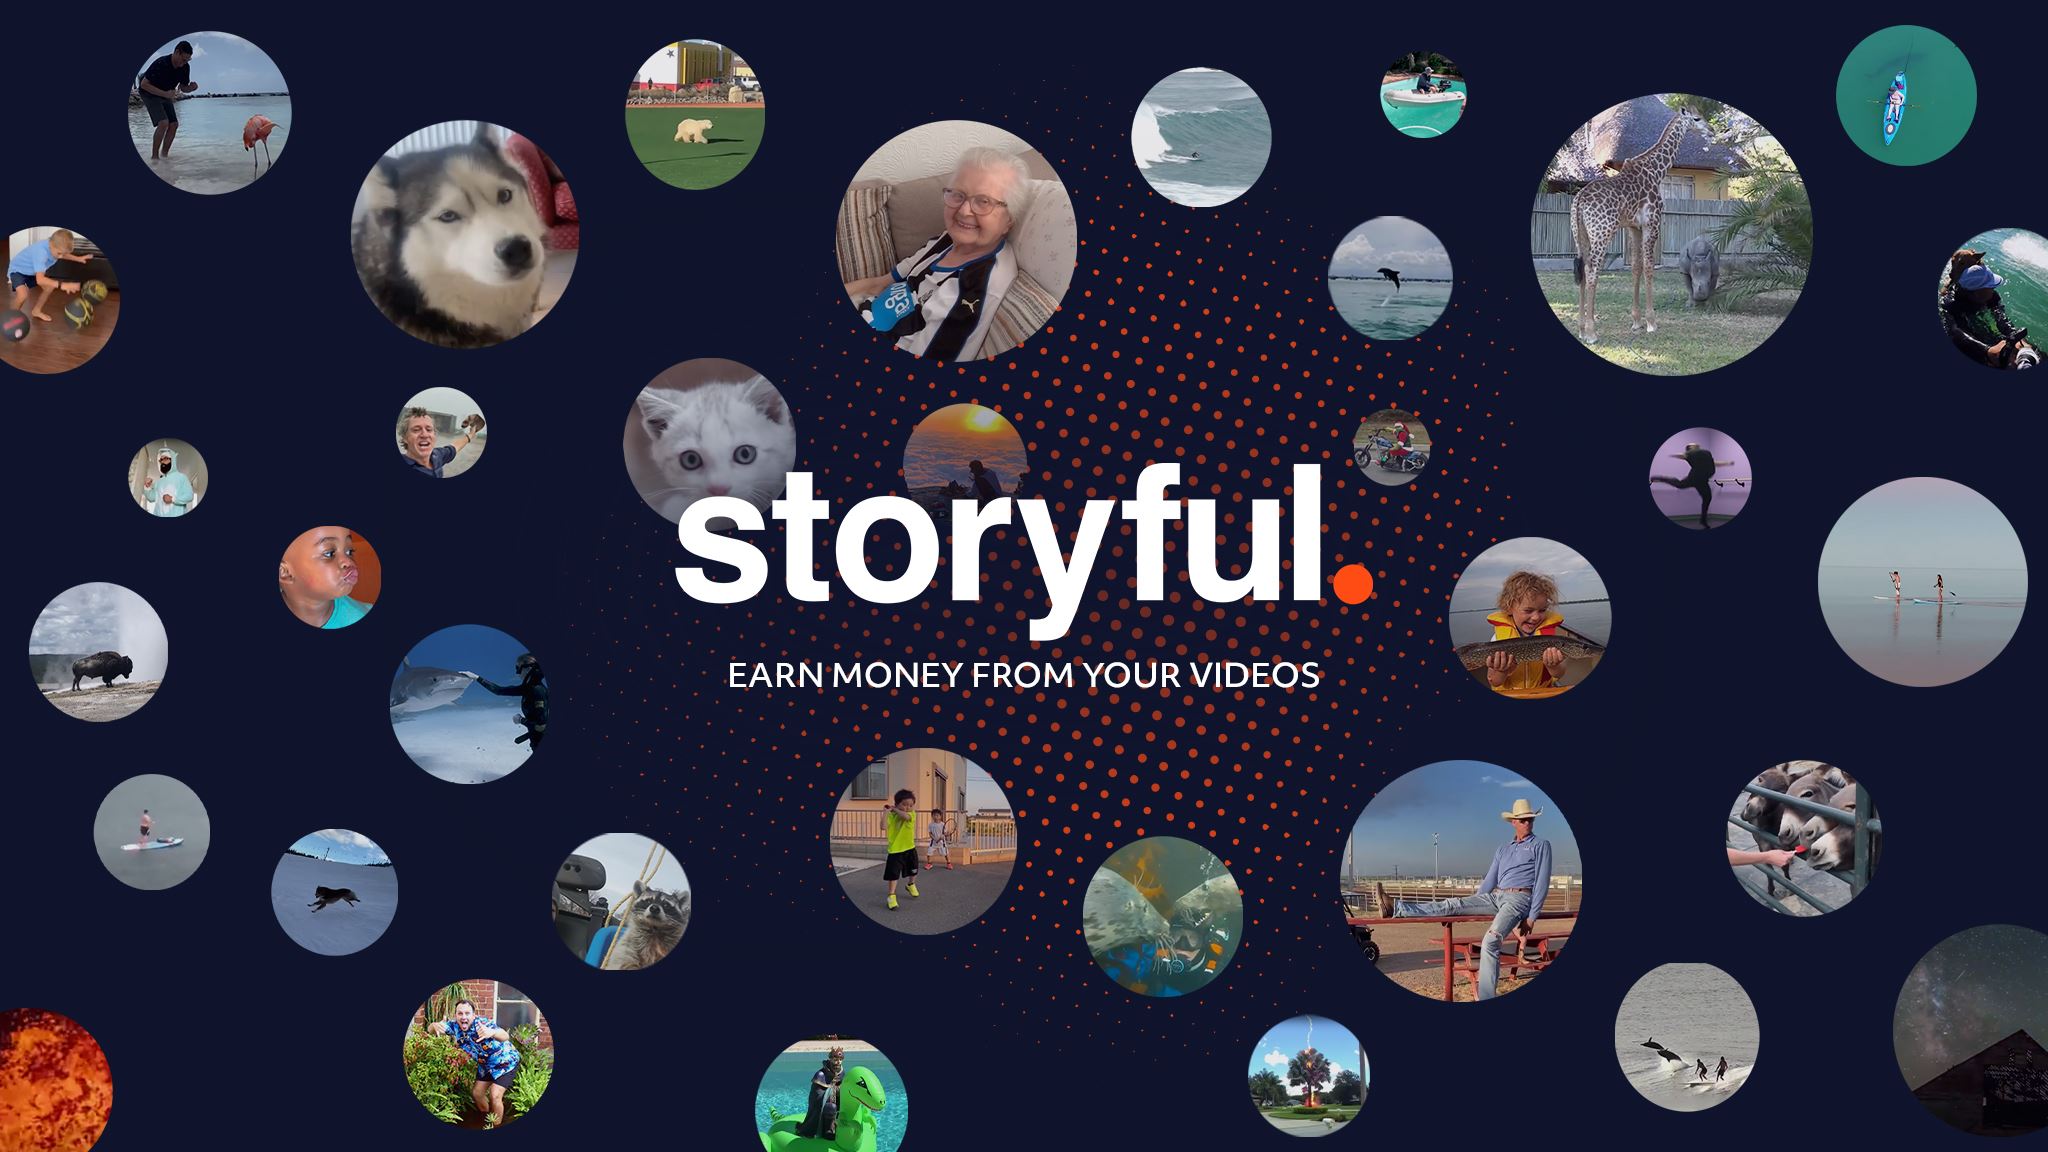 StoryfulViral